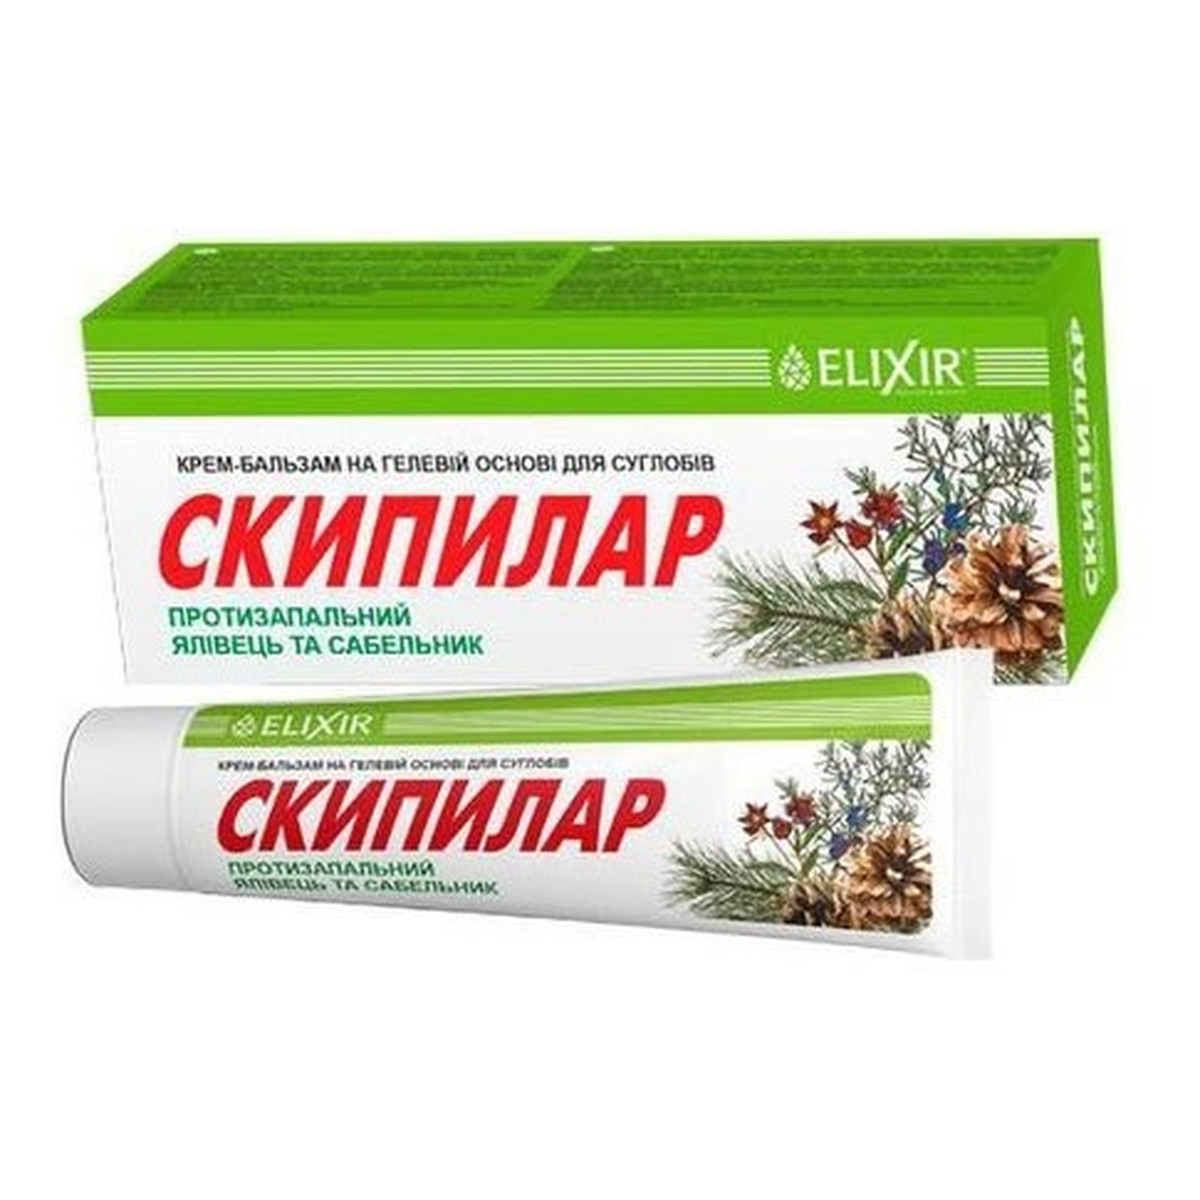 Elixir Krem-balsam na stawy z jałowcem i pięciornikiem skipilar 75ml